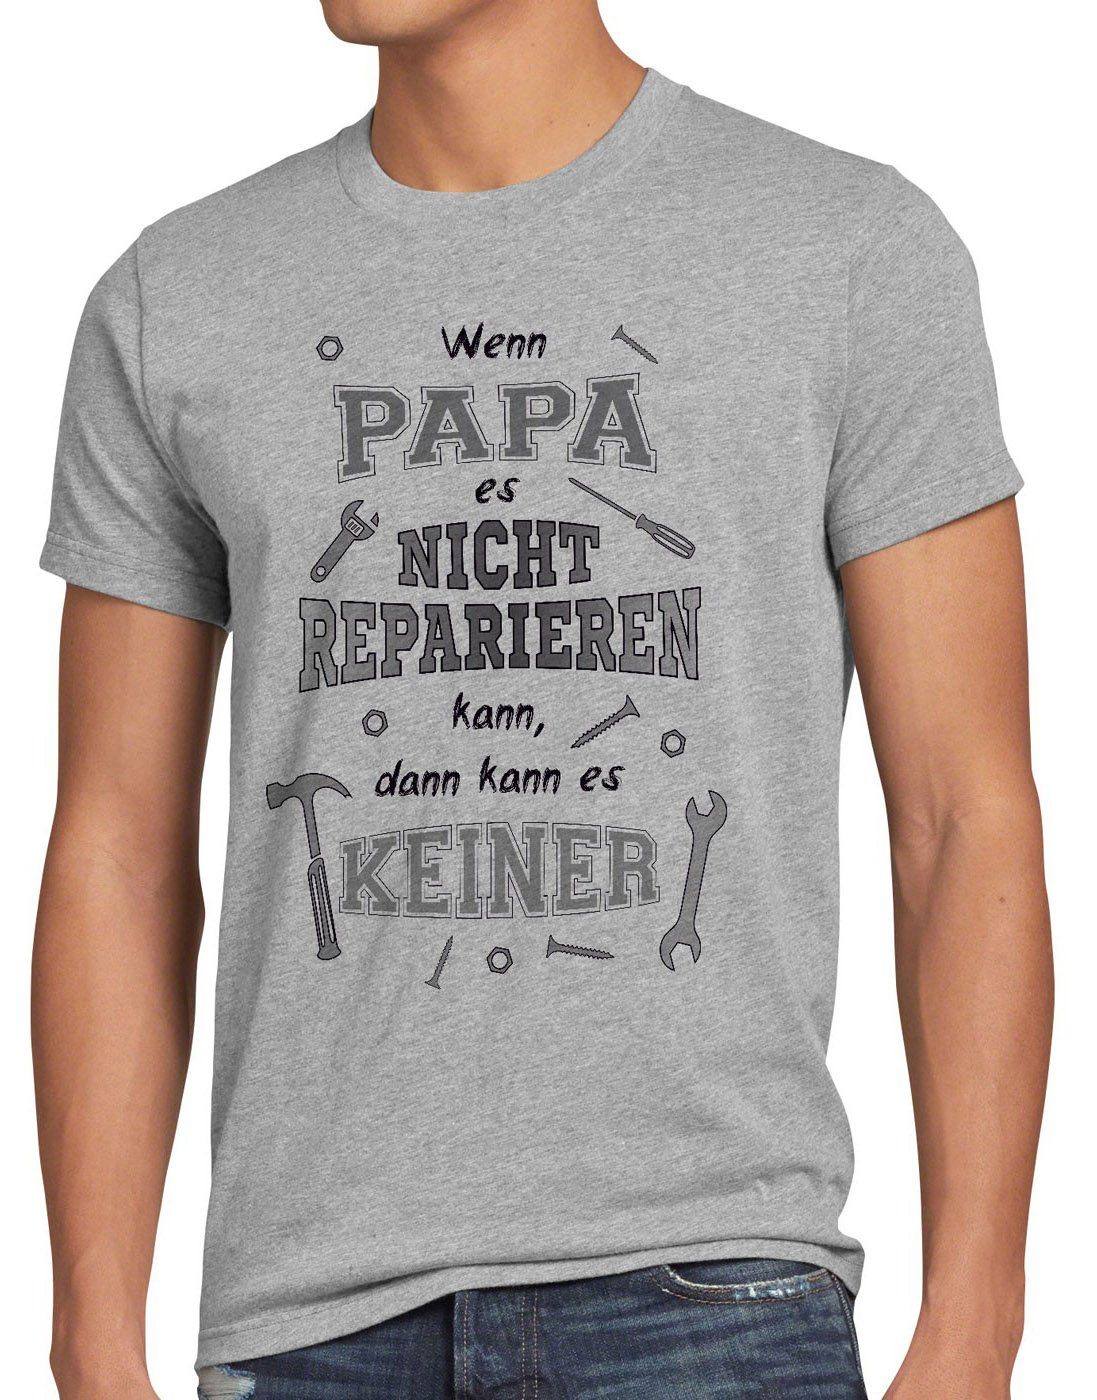 style3 Print-Shirt Herren T-Shirt Wenn Papa nicht reparieren kann es keiner Shirt Spruch Funshirt grau meliert